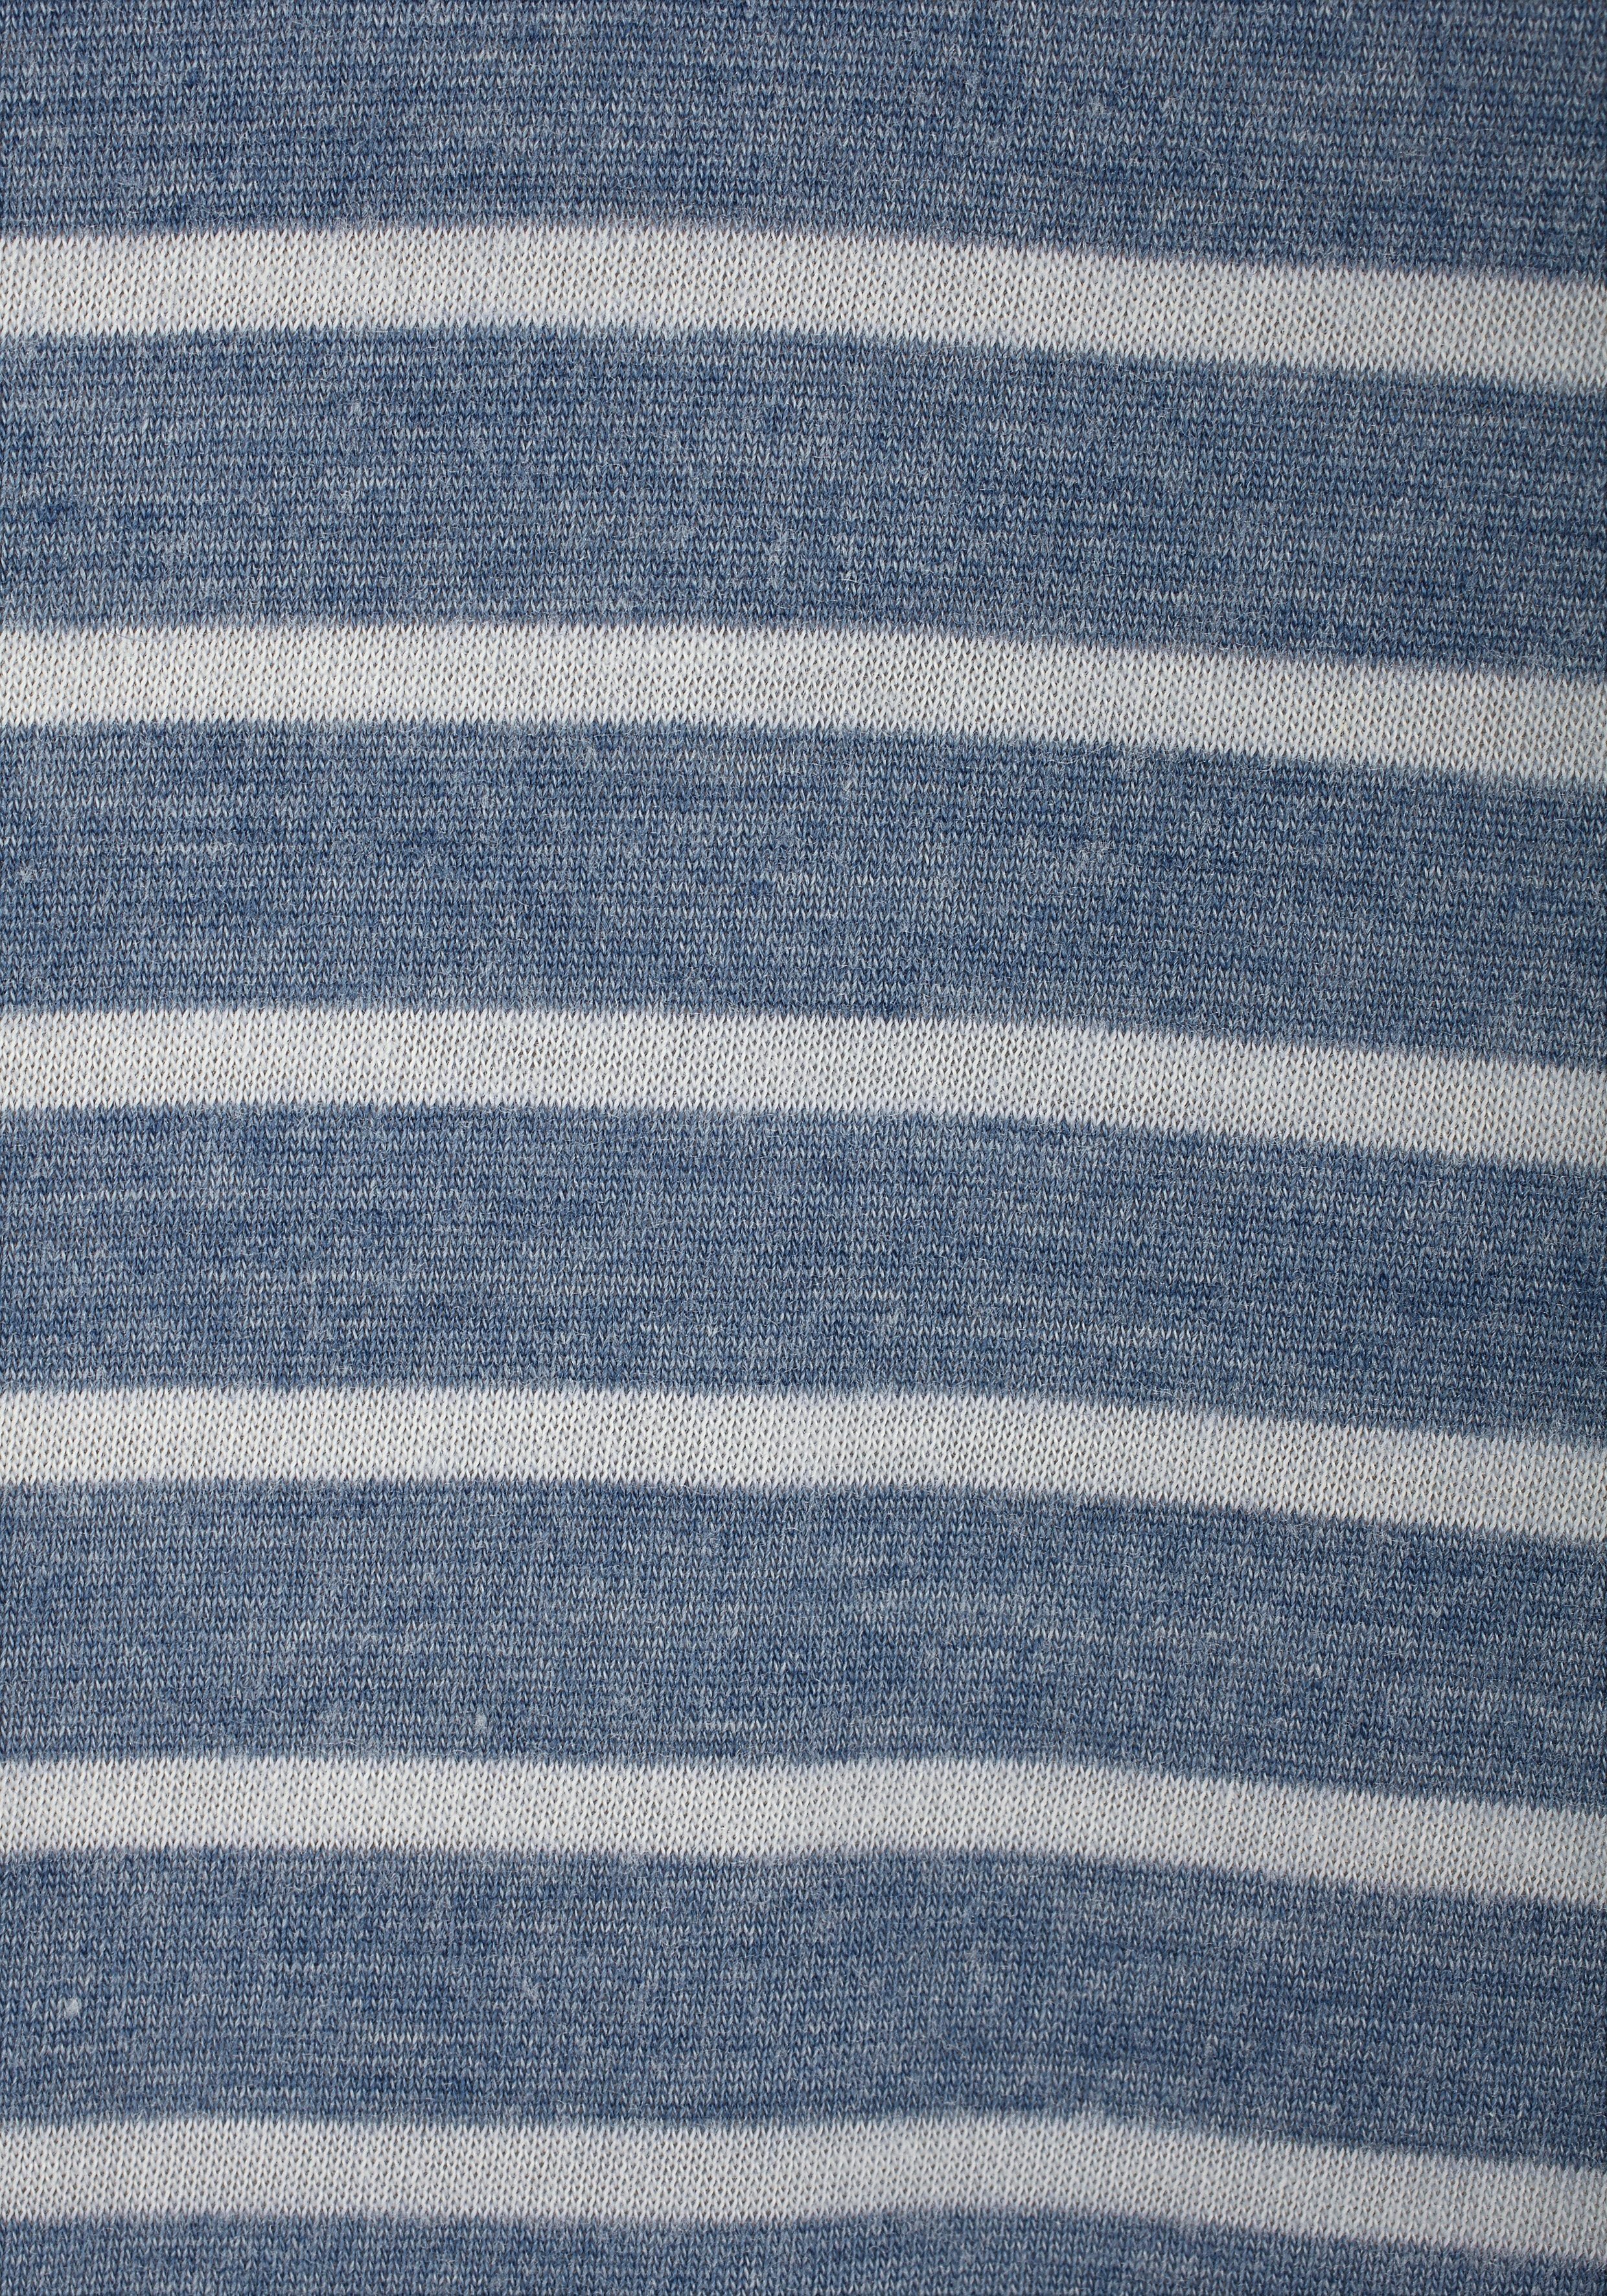 Venice Beach Jerseykleid (mit und Bindegürtel) Streifenprint blau-weiß-gestreift